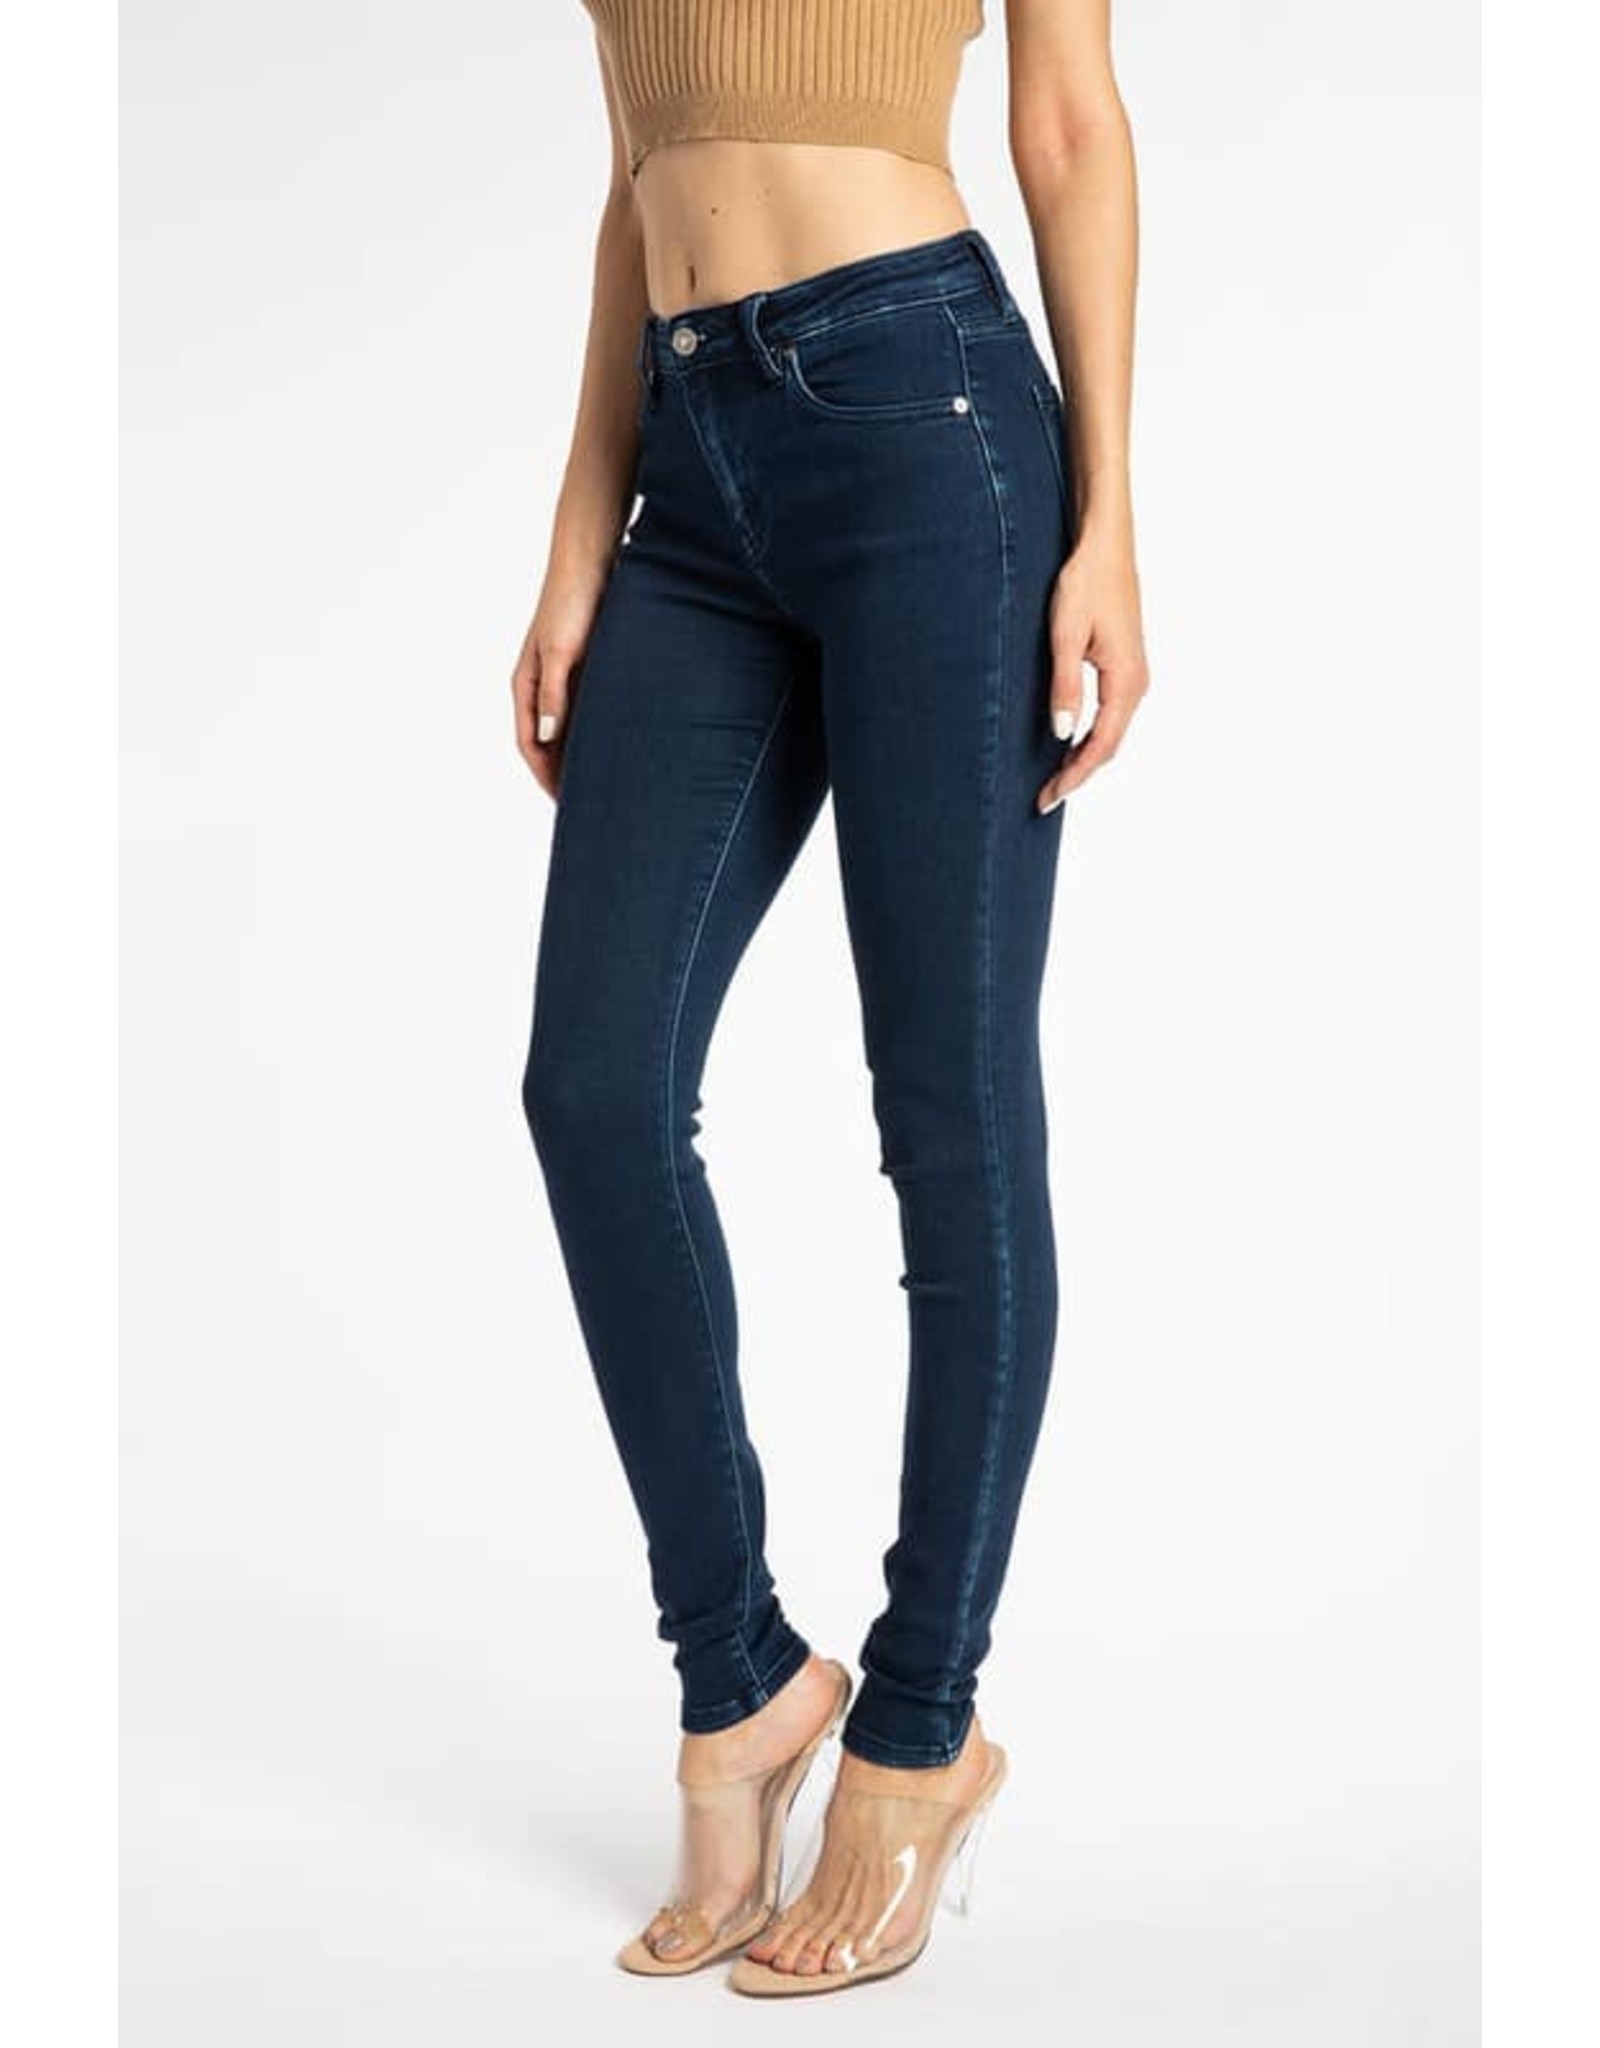 Gemini Mid-Rise KanCan Jeans